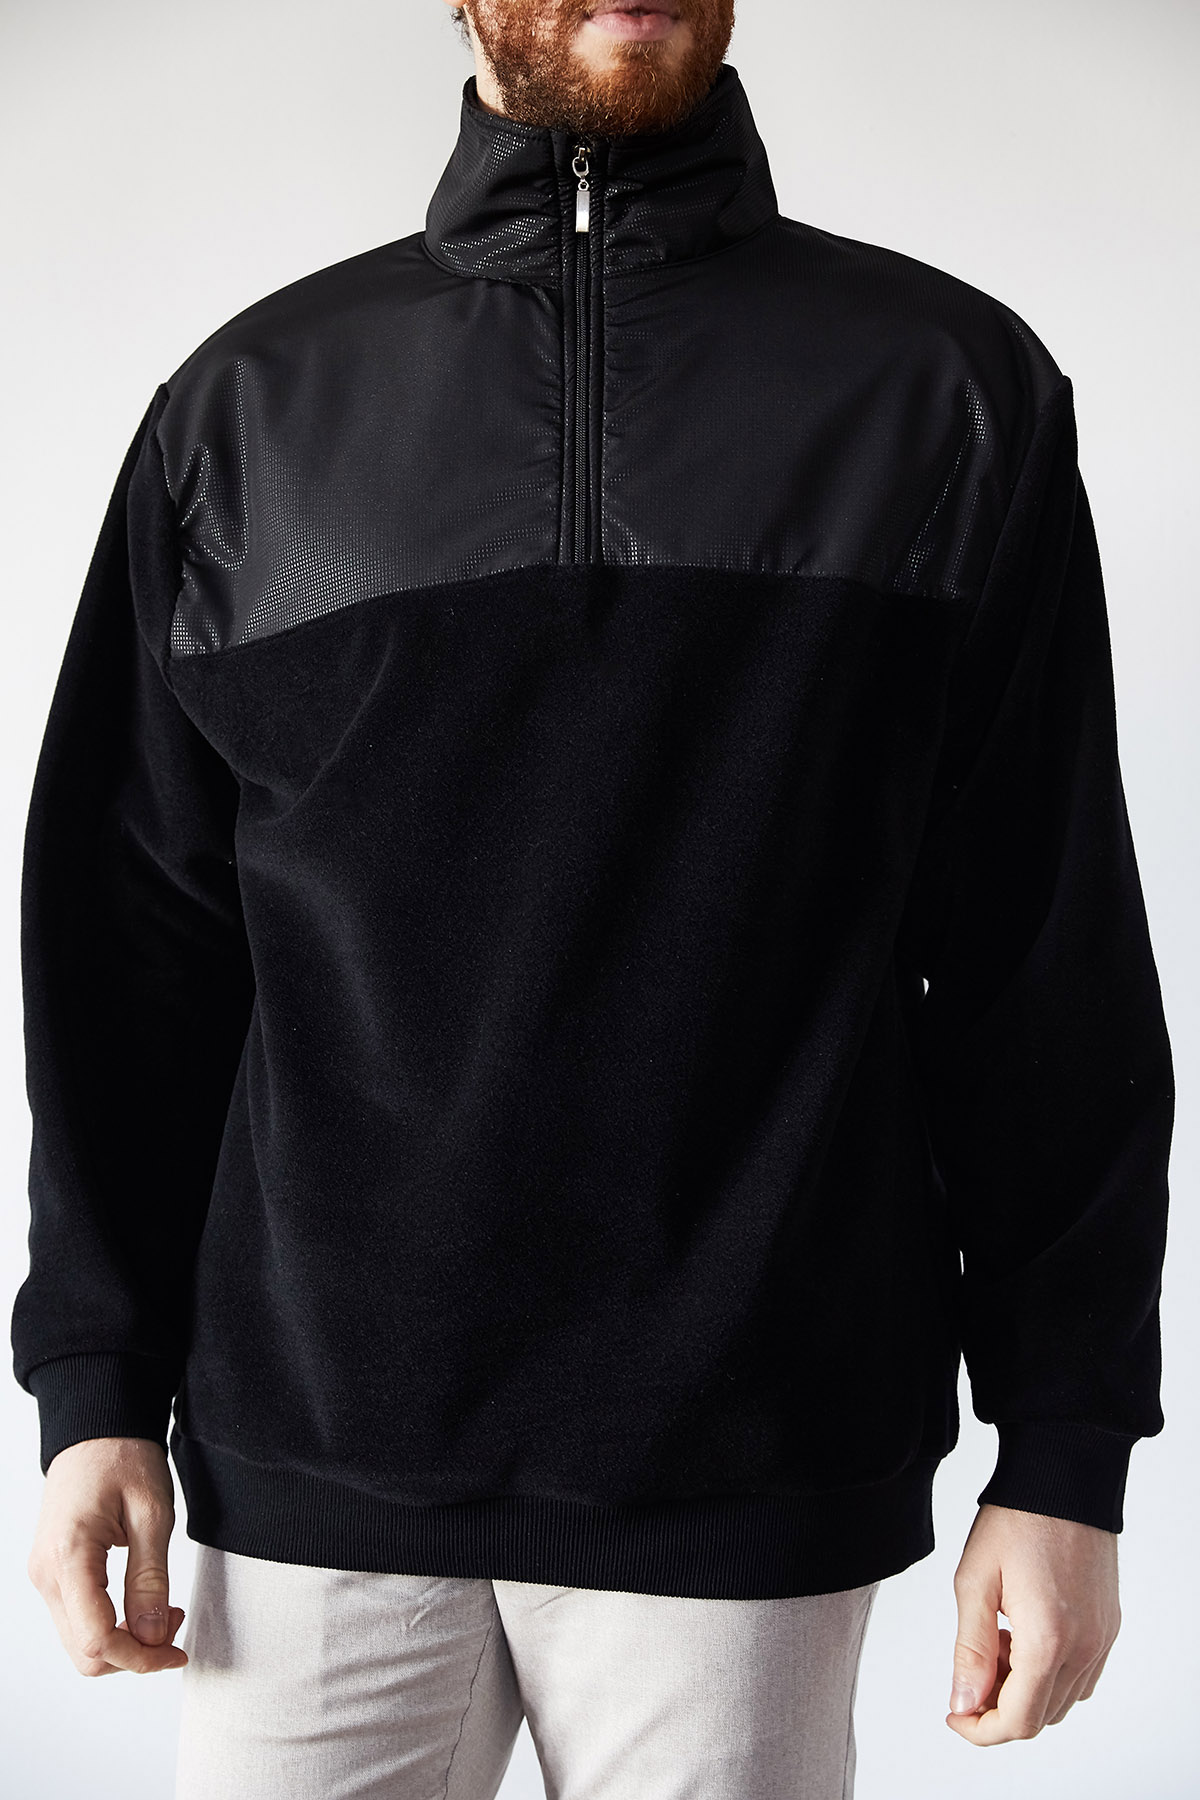 Siyah Deri Garnili Polar Sweatshirt 1KXE8-44233-02 - 2